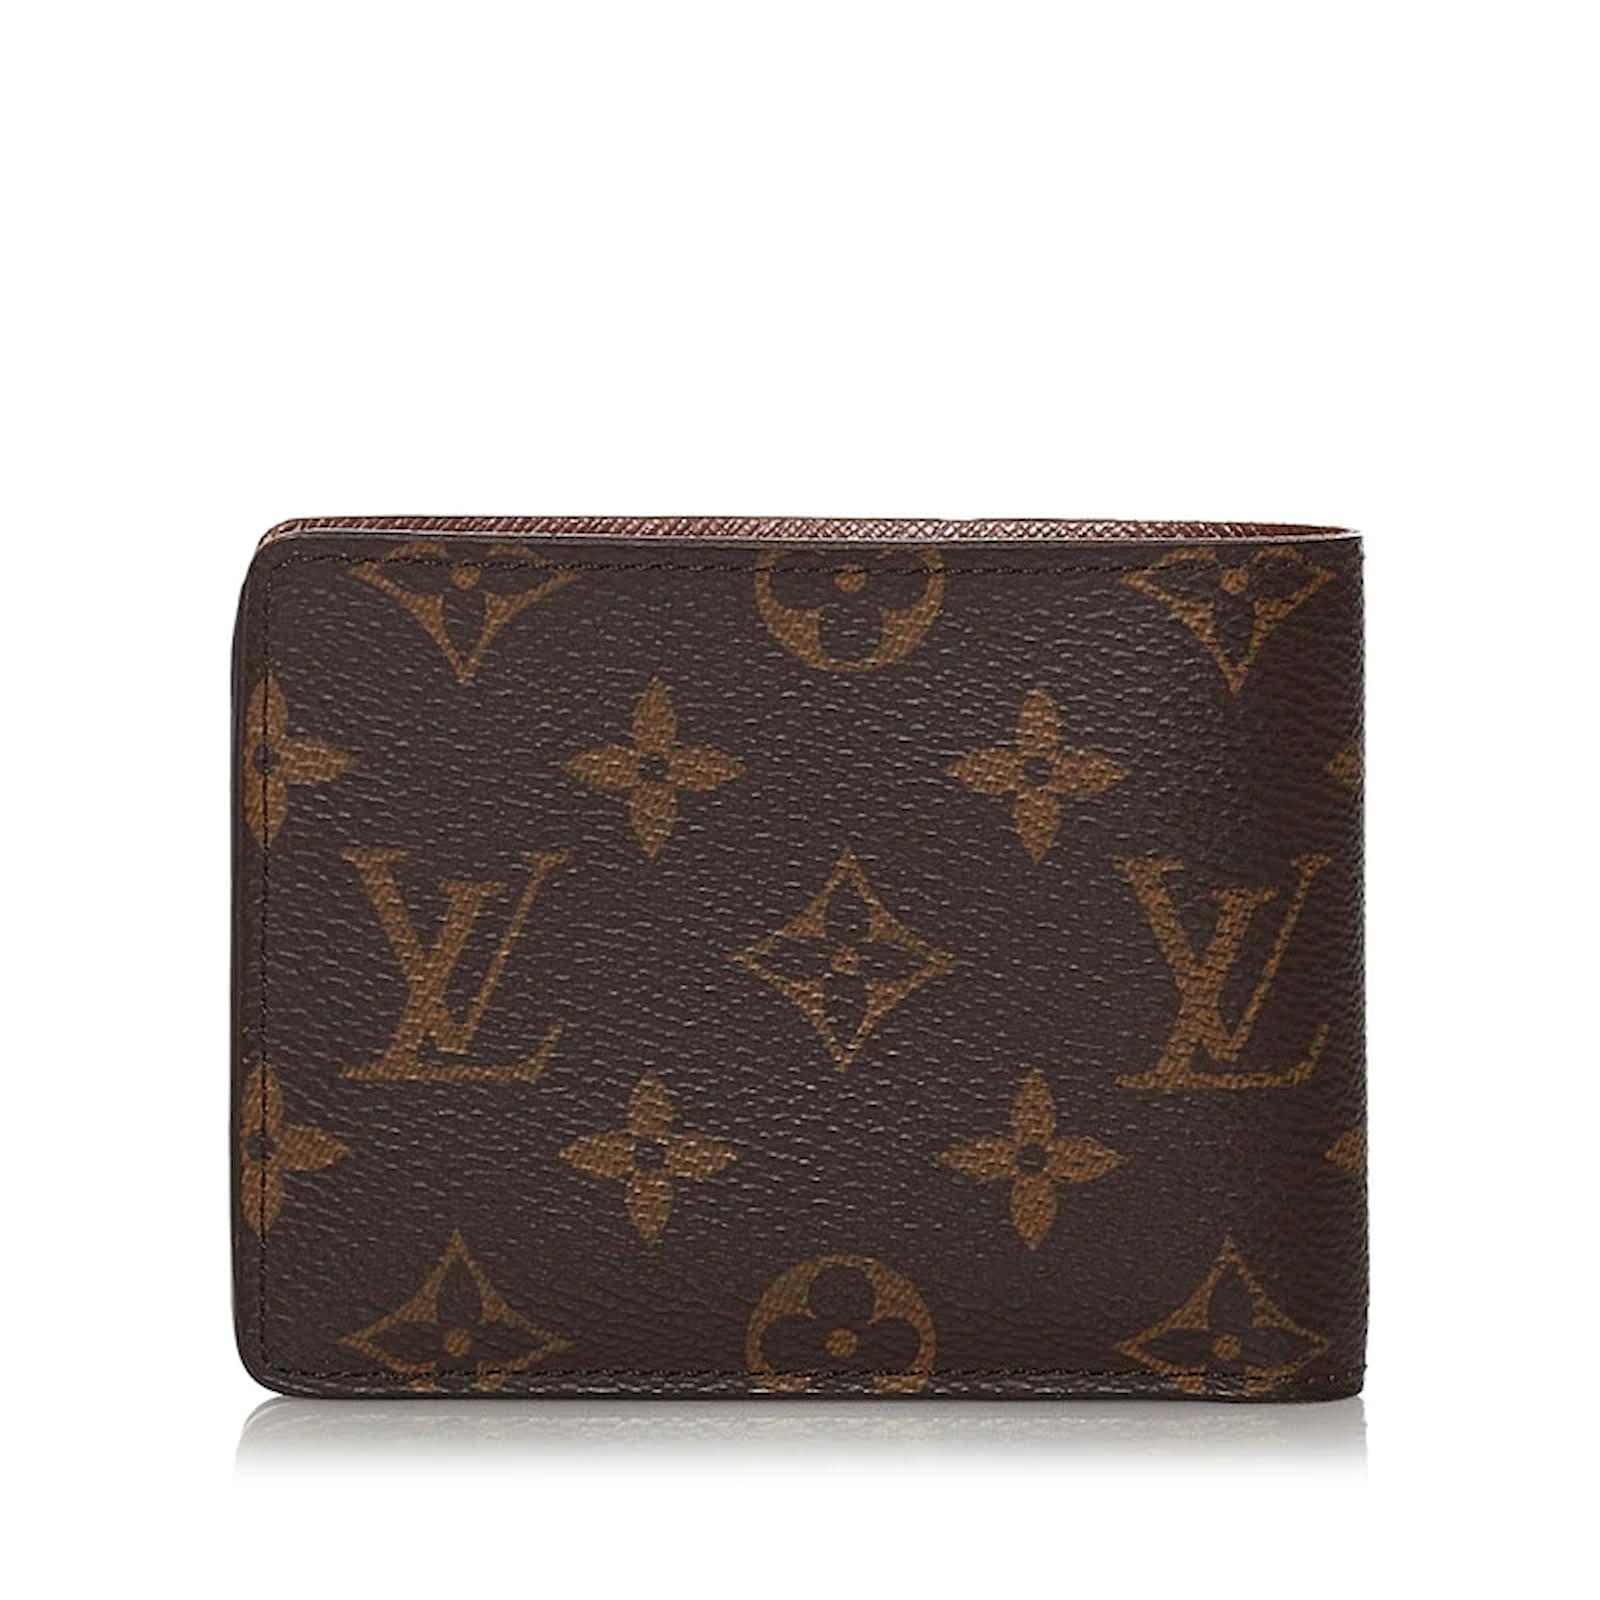 Louis Vuitton lv multiple short wallet